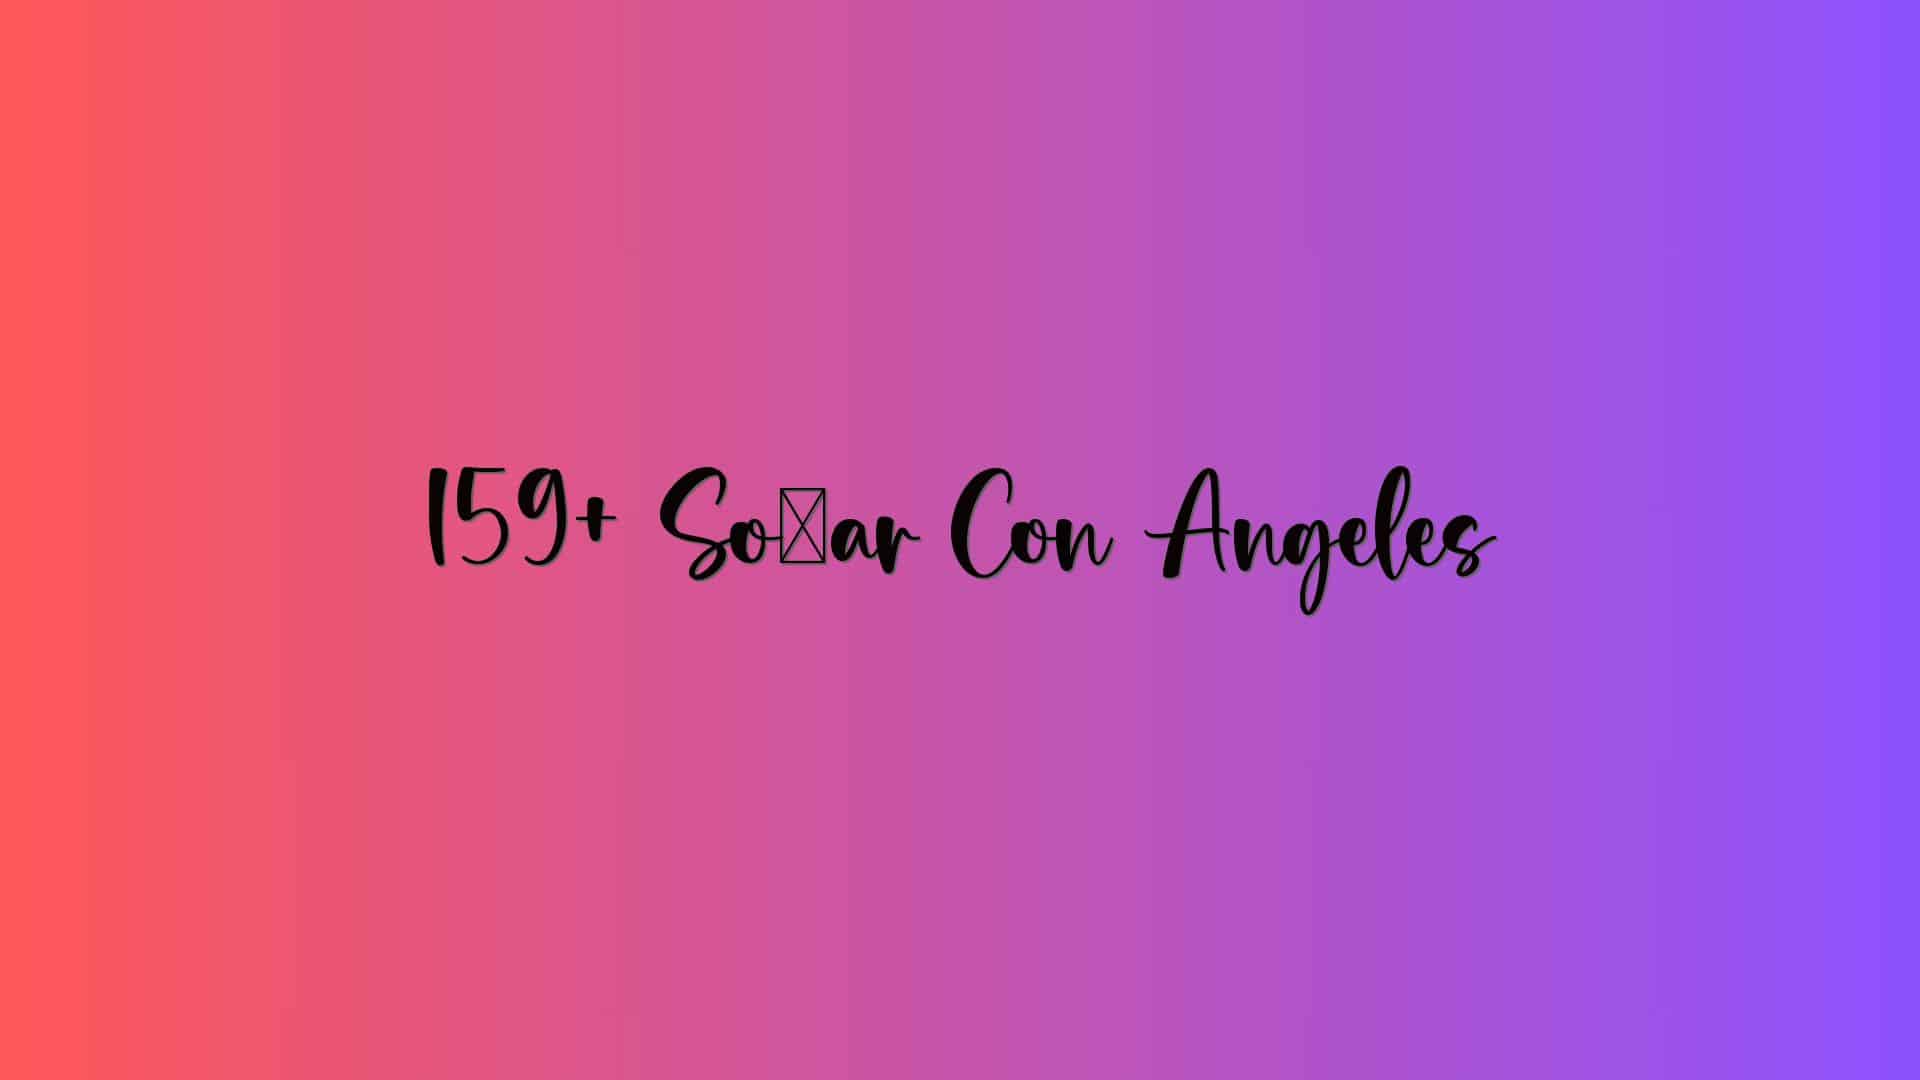 159+ Soñar Con Angeles